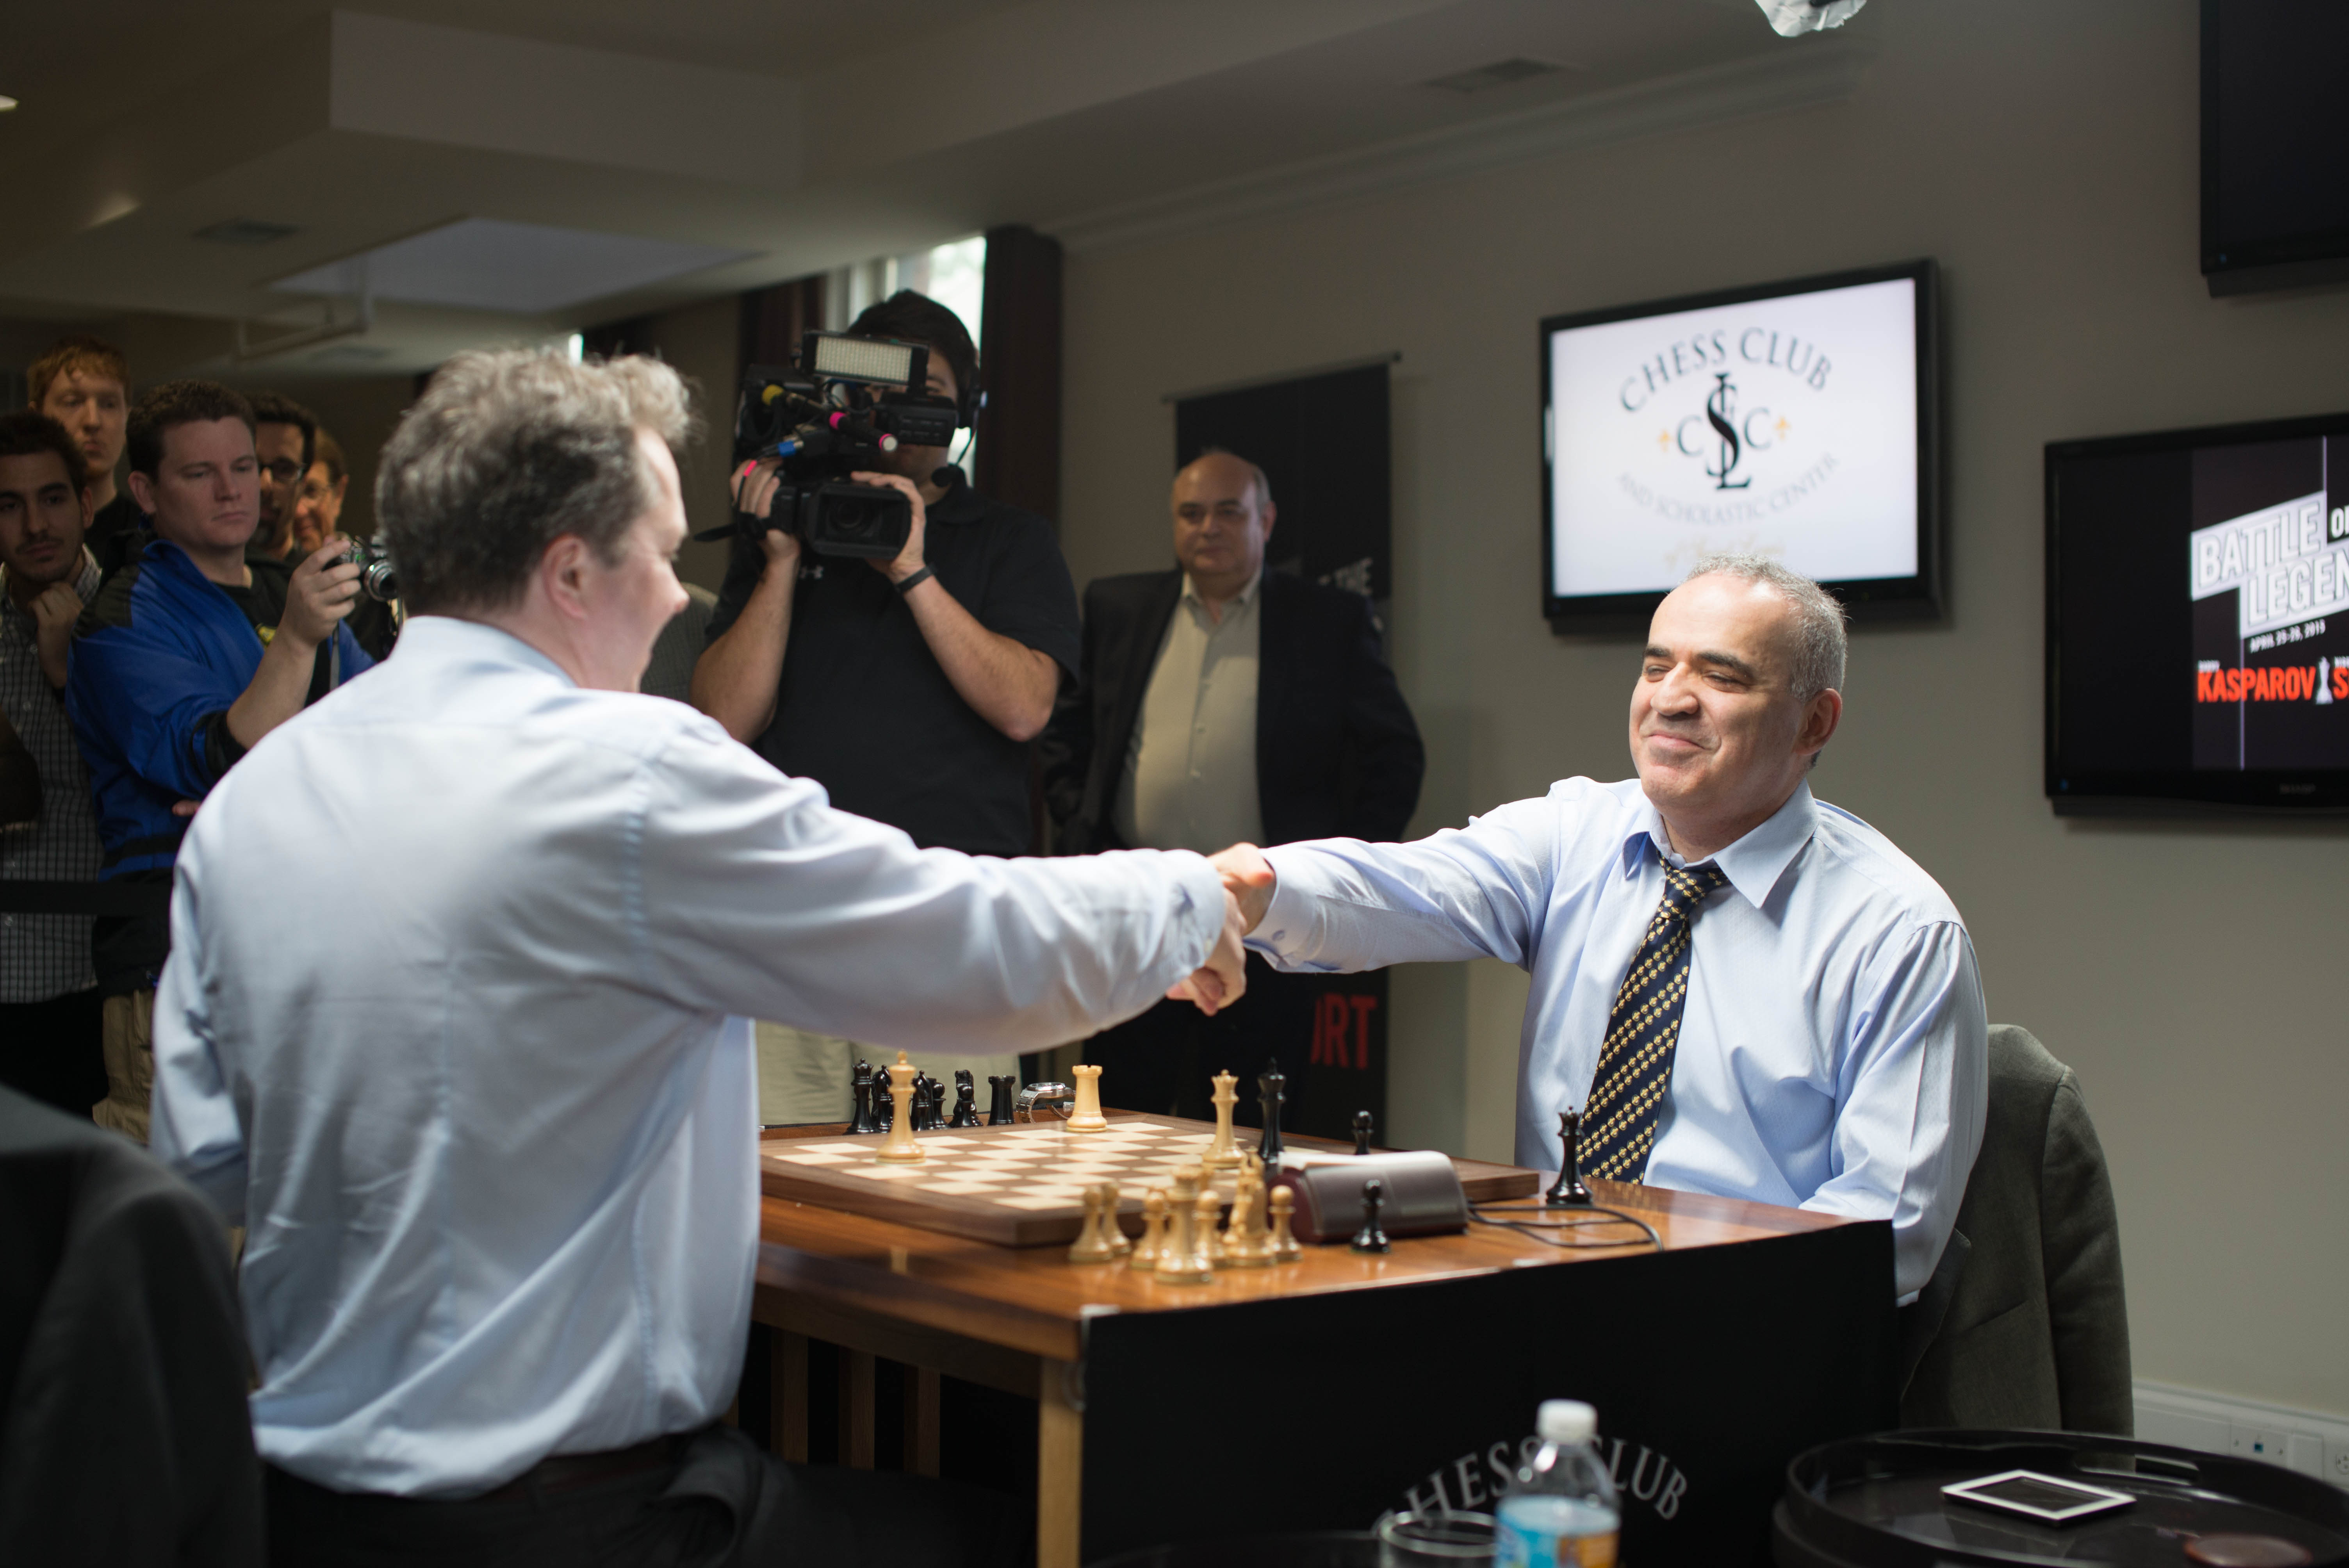 Abertura Ruy Lopez Garry Kasparov x Nigel Short 